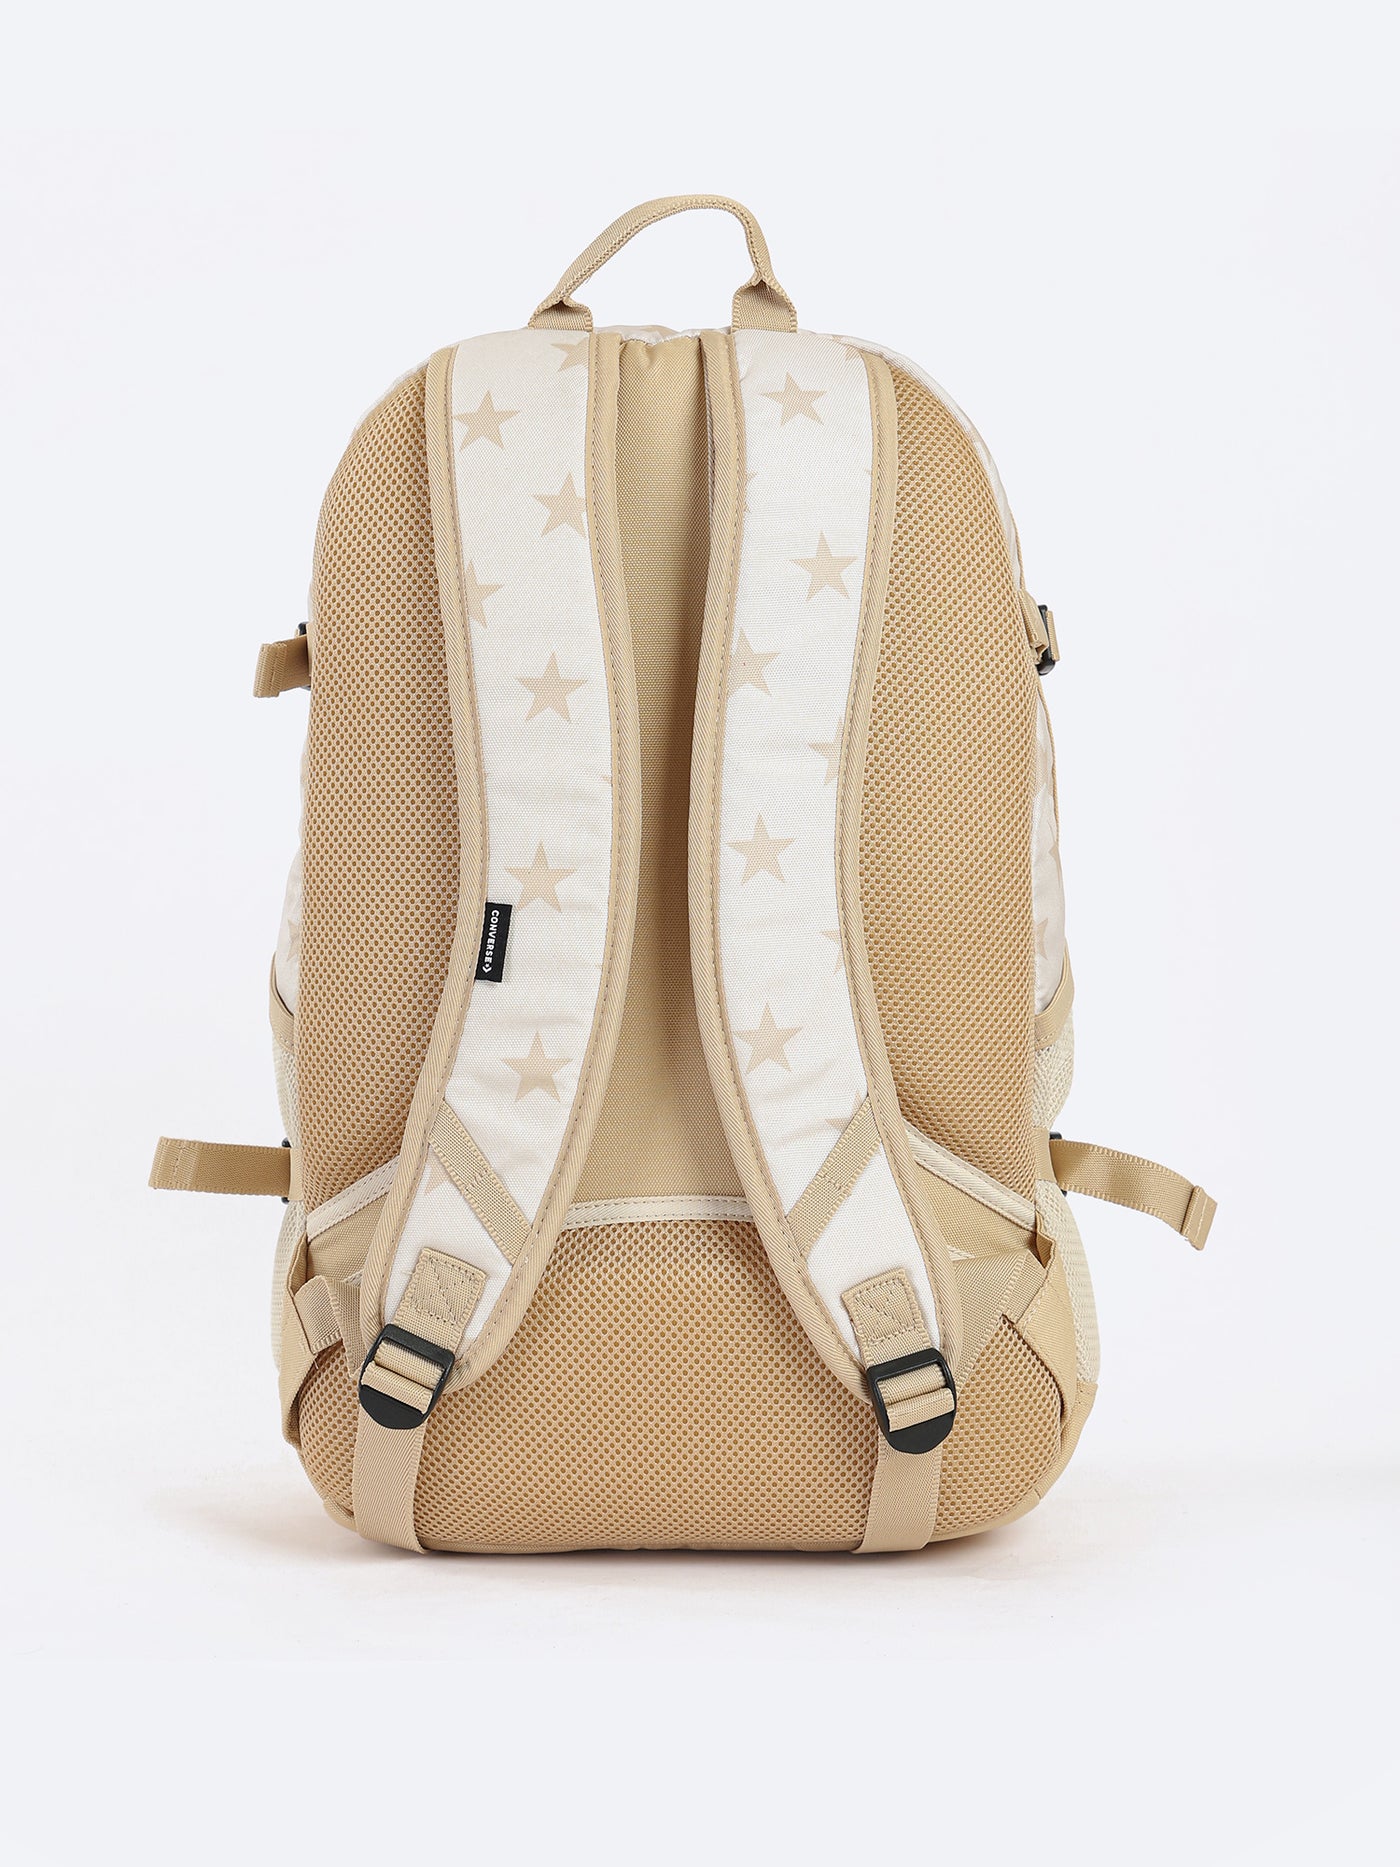 Unisex Backpack - Go 2 - Seasonal